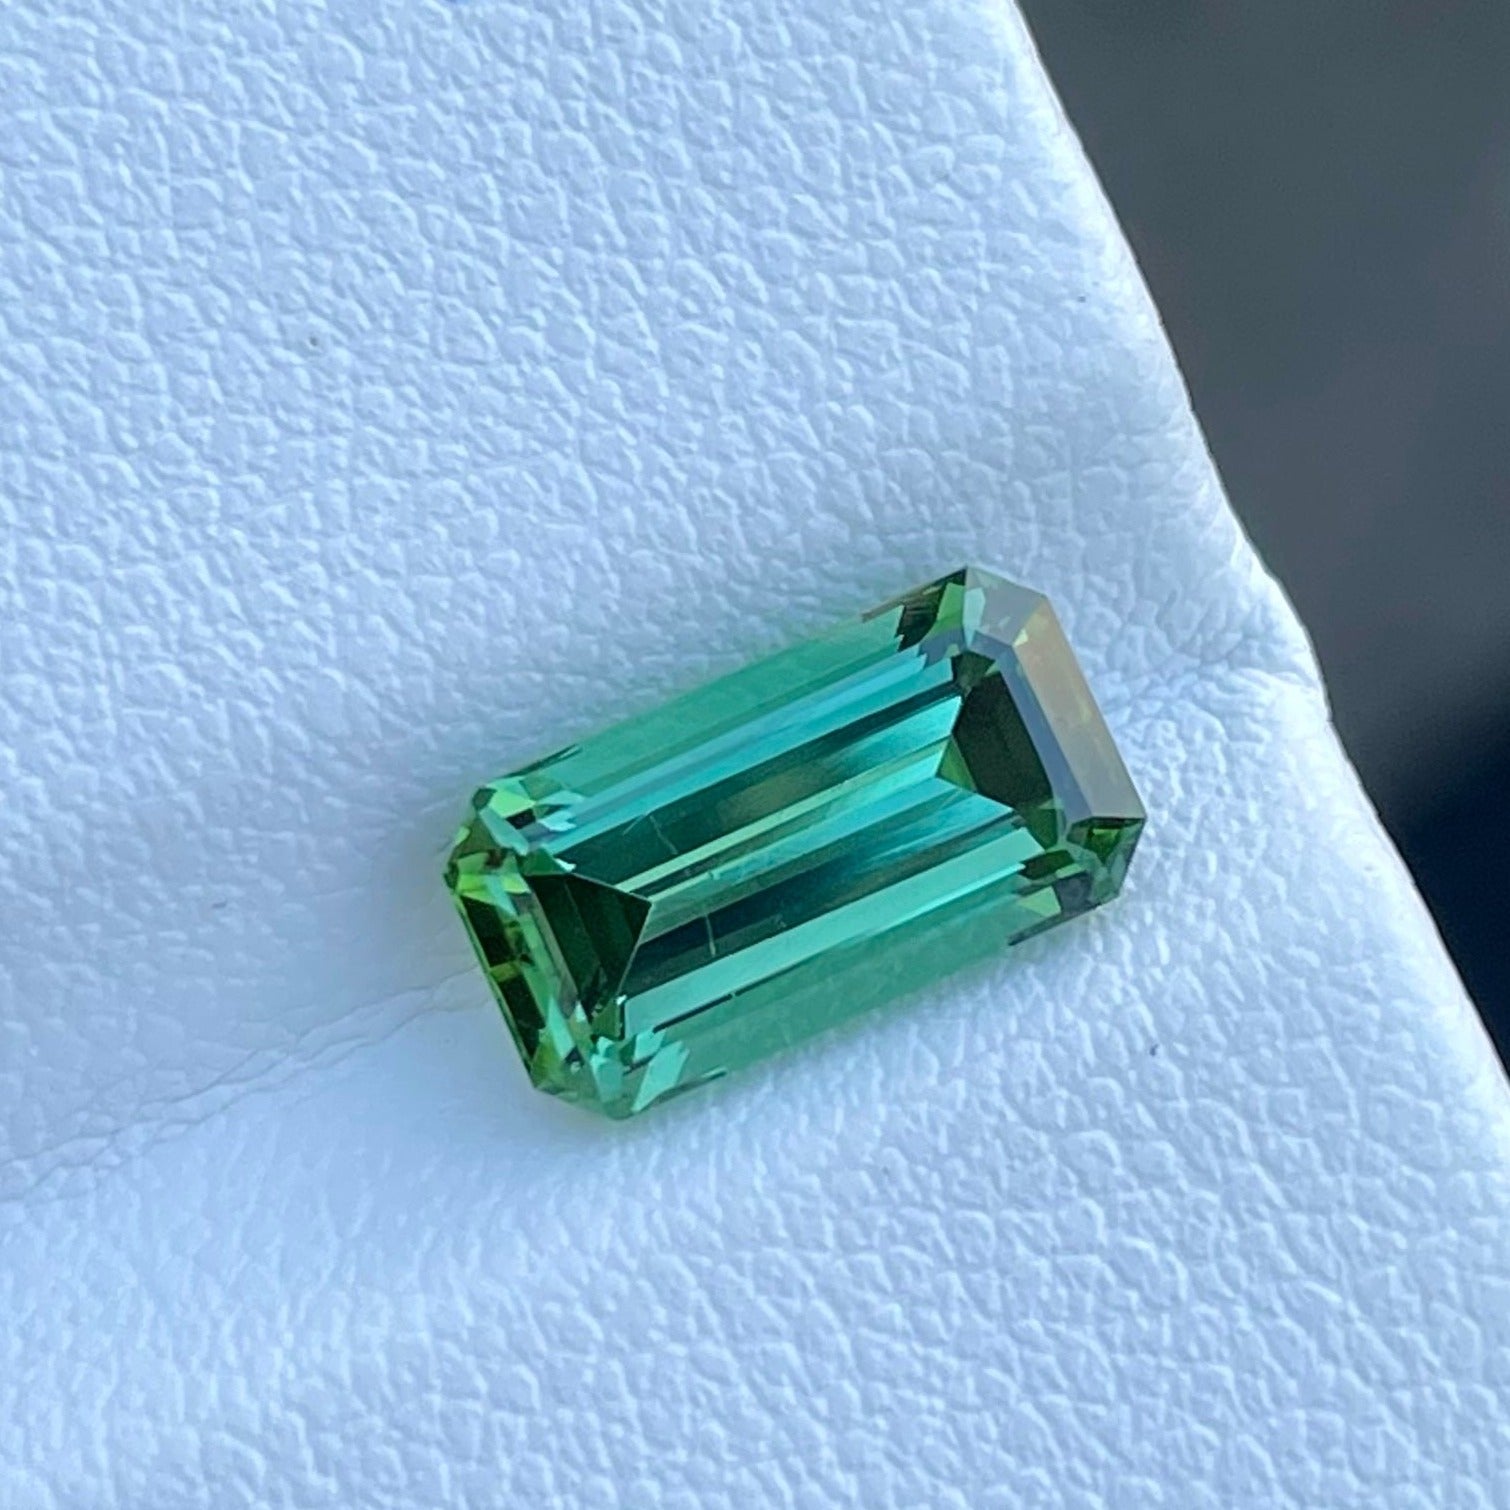 Natural Tourmaline 2.60 Carat Emerald Cut